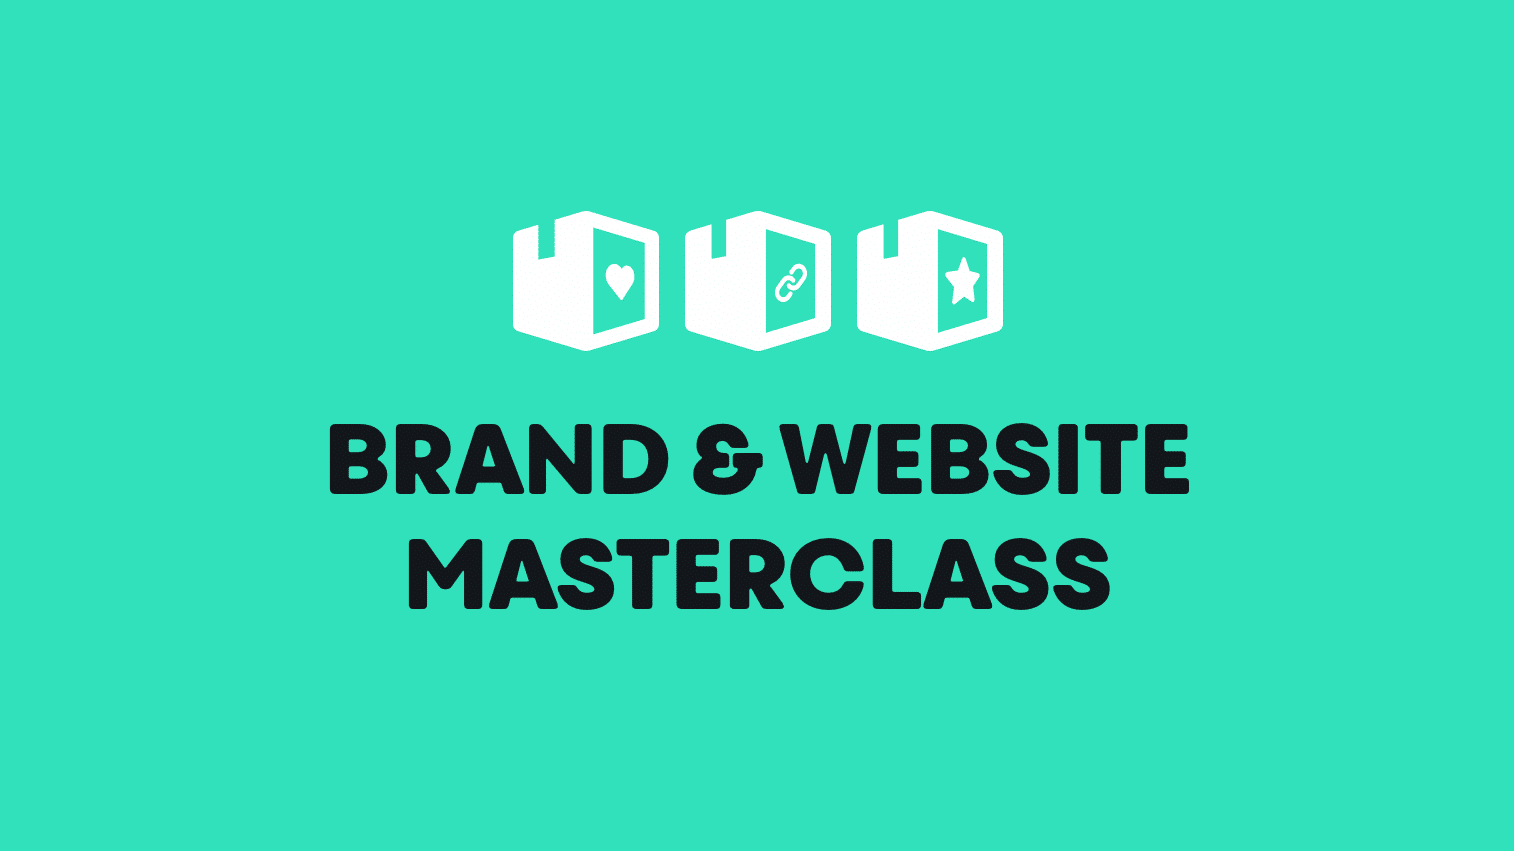 Brand and Website Masterclass slidedeck screenshot